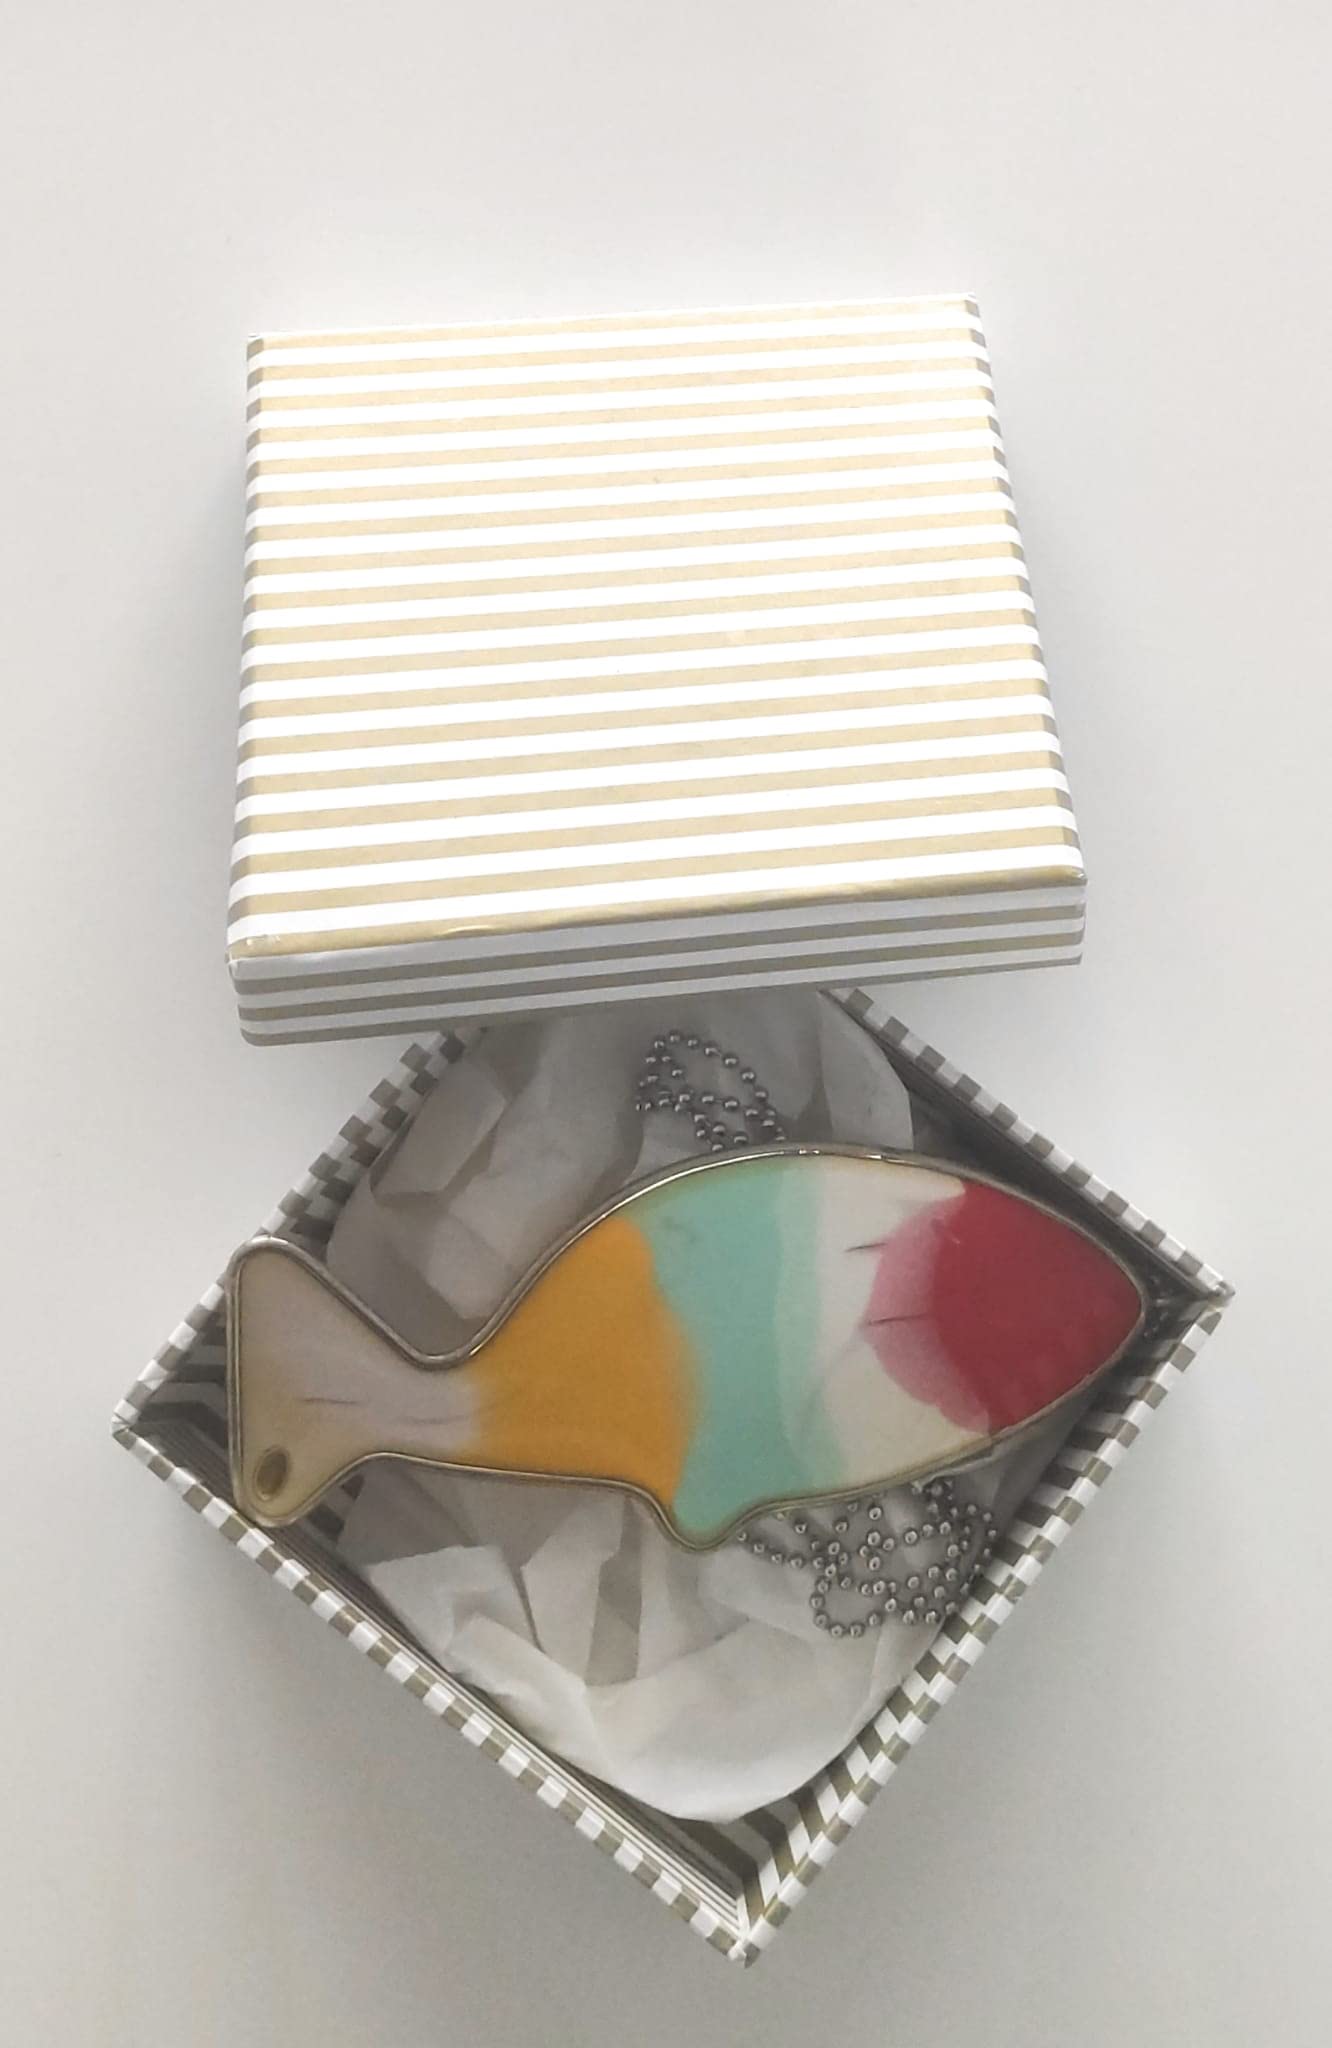 Catenina con Ciondolo Pesce Multicolor in acciaio chirurgico e Resina multicolor Vulca, pezzi unici fatti a mano, artigianato 100% made in Italy